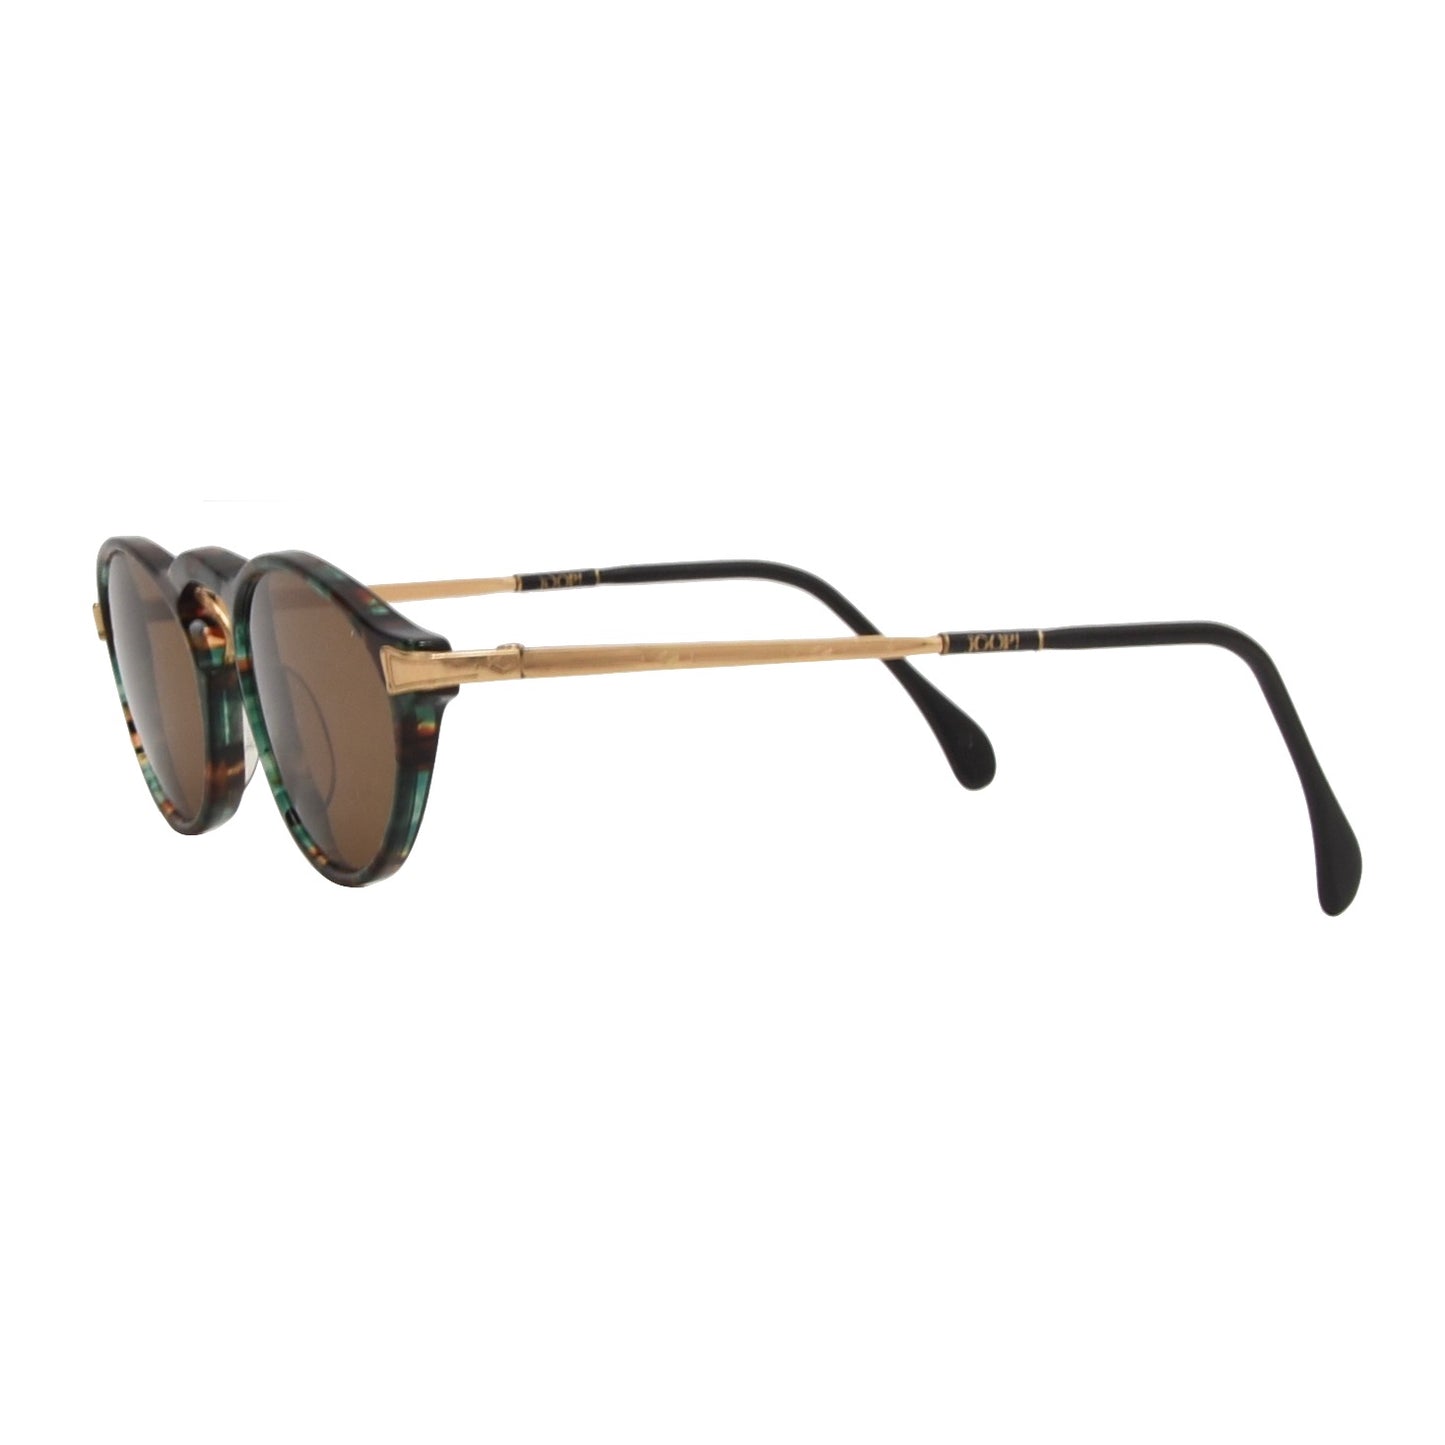 Vintage JOOP! Mod. 211 Sunglasses